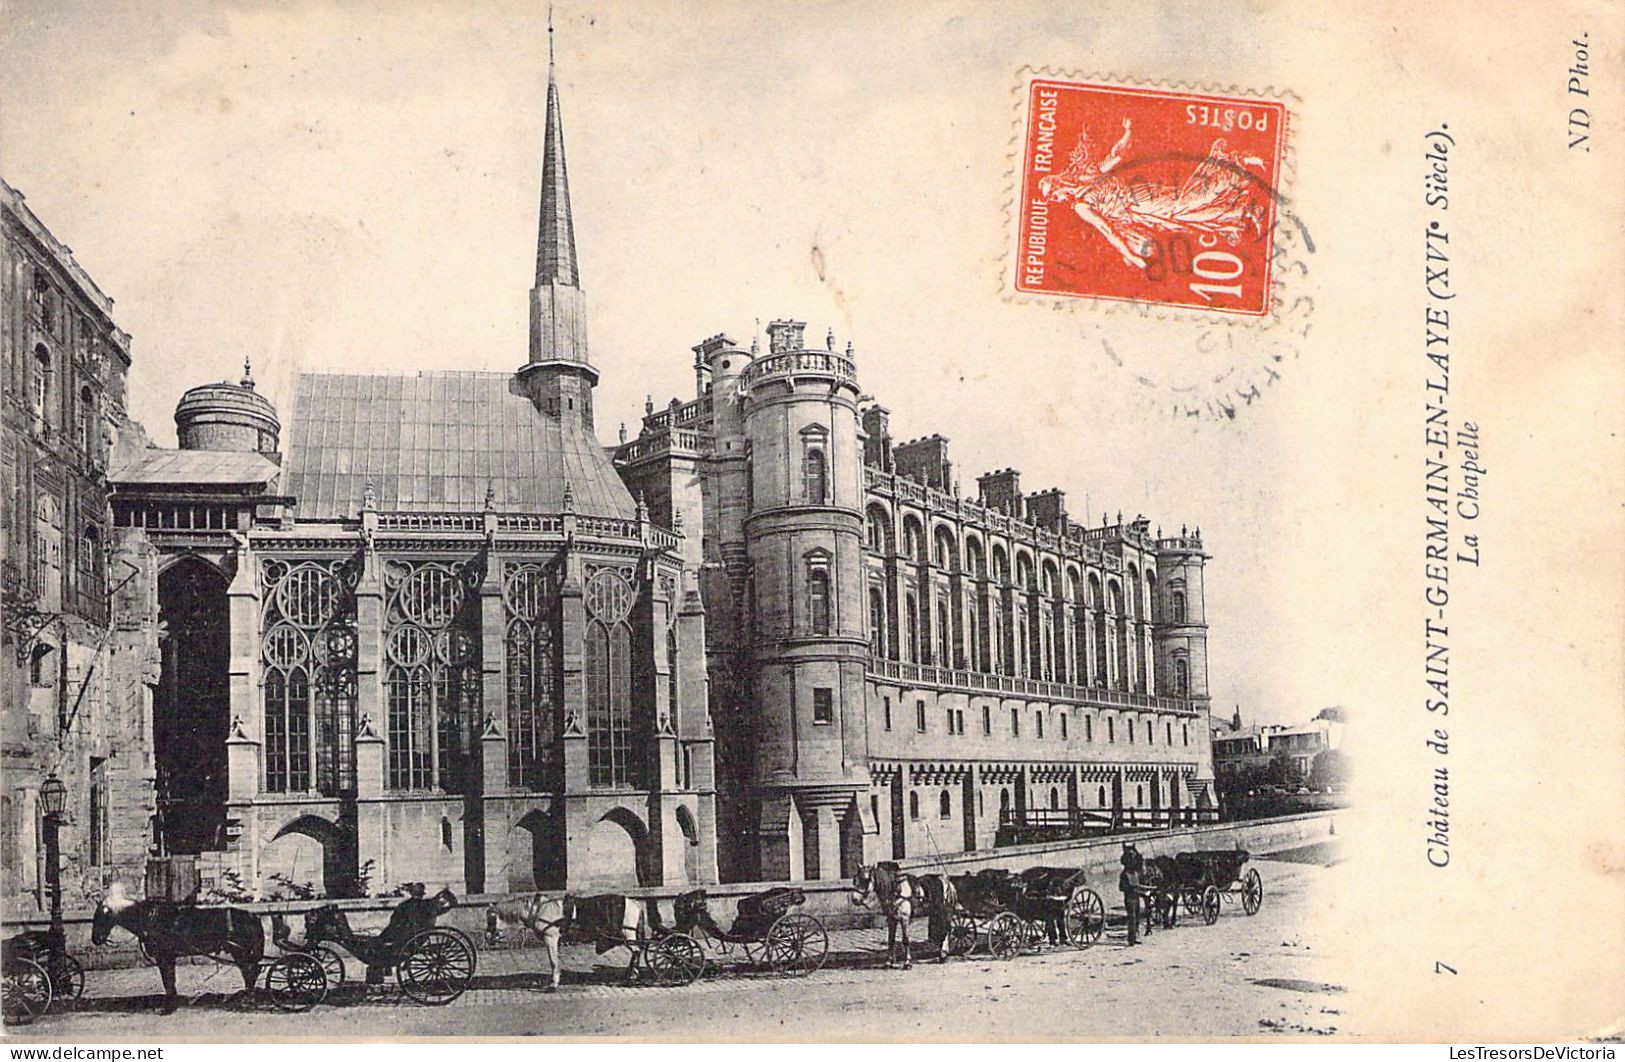 FRANCE - 78 - SAINT GERMAIN EN LAYE - La Chapelle - Carte Postale Ancienne - St. Germain En Laye (castle)